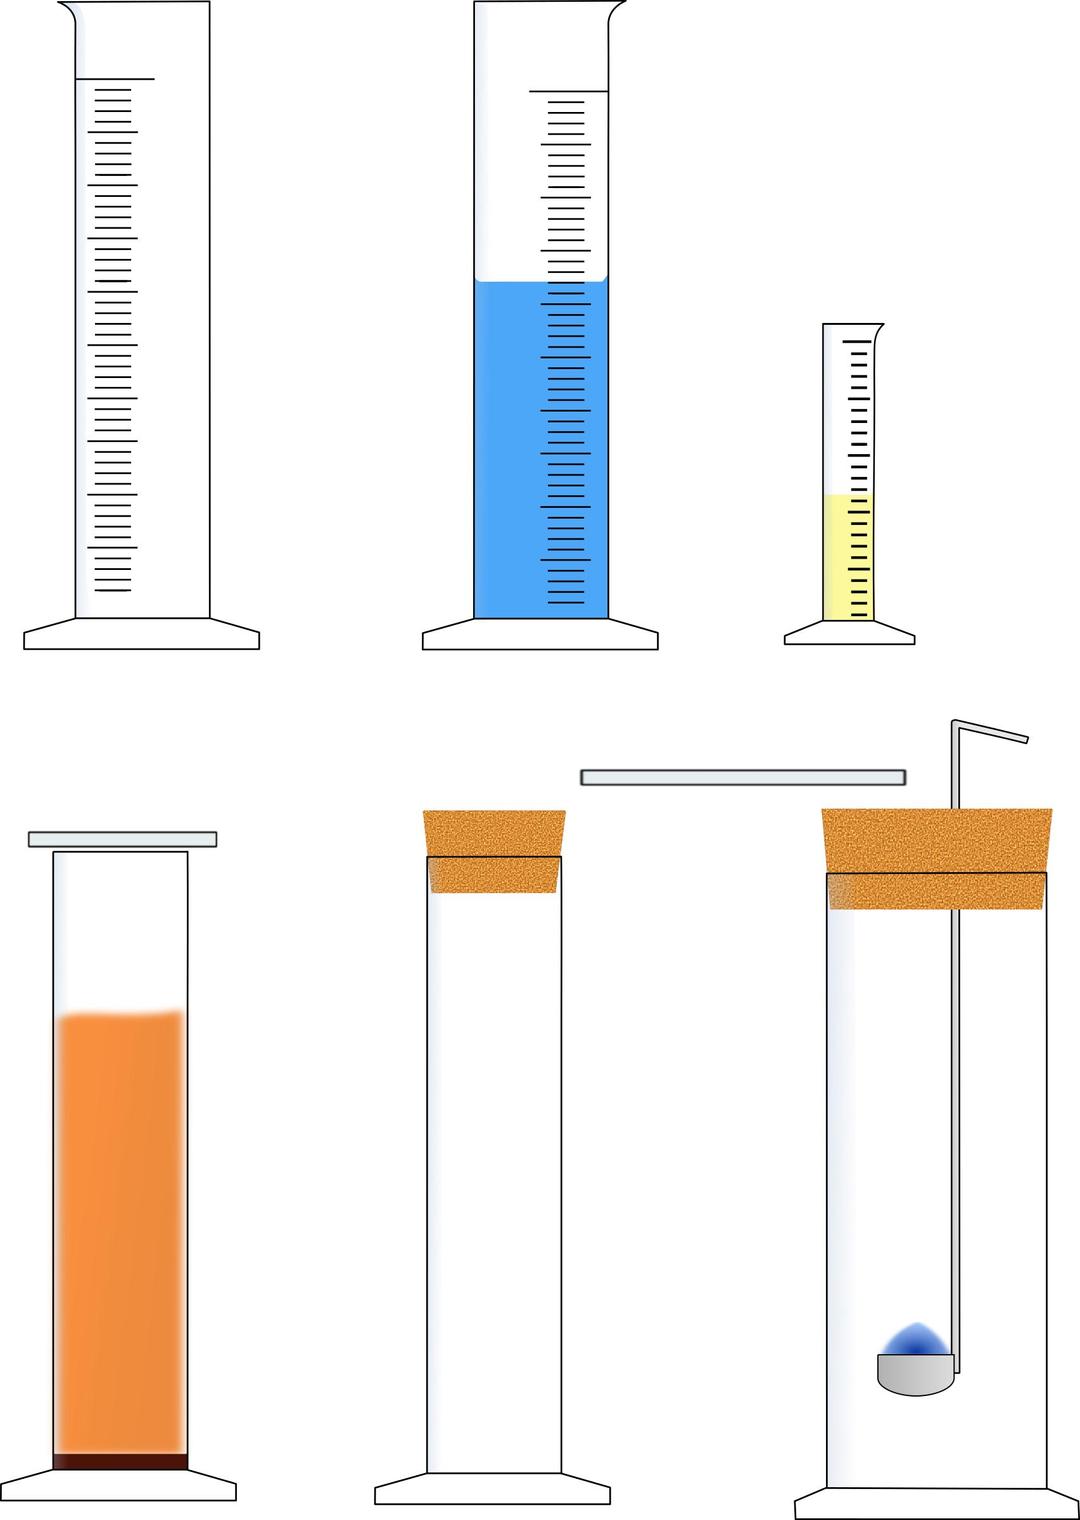 Stand- und Meßzylinder erweitert / Measuring cylinder with equipment png transparent